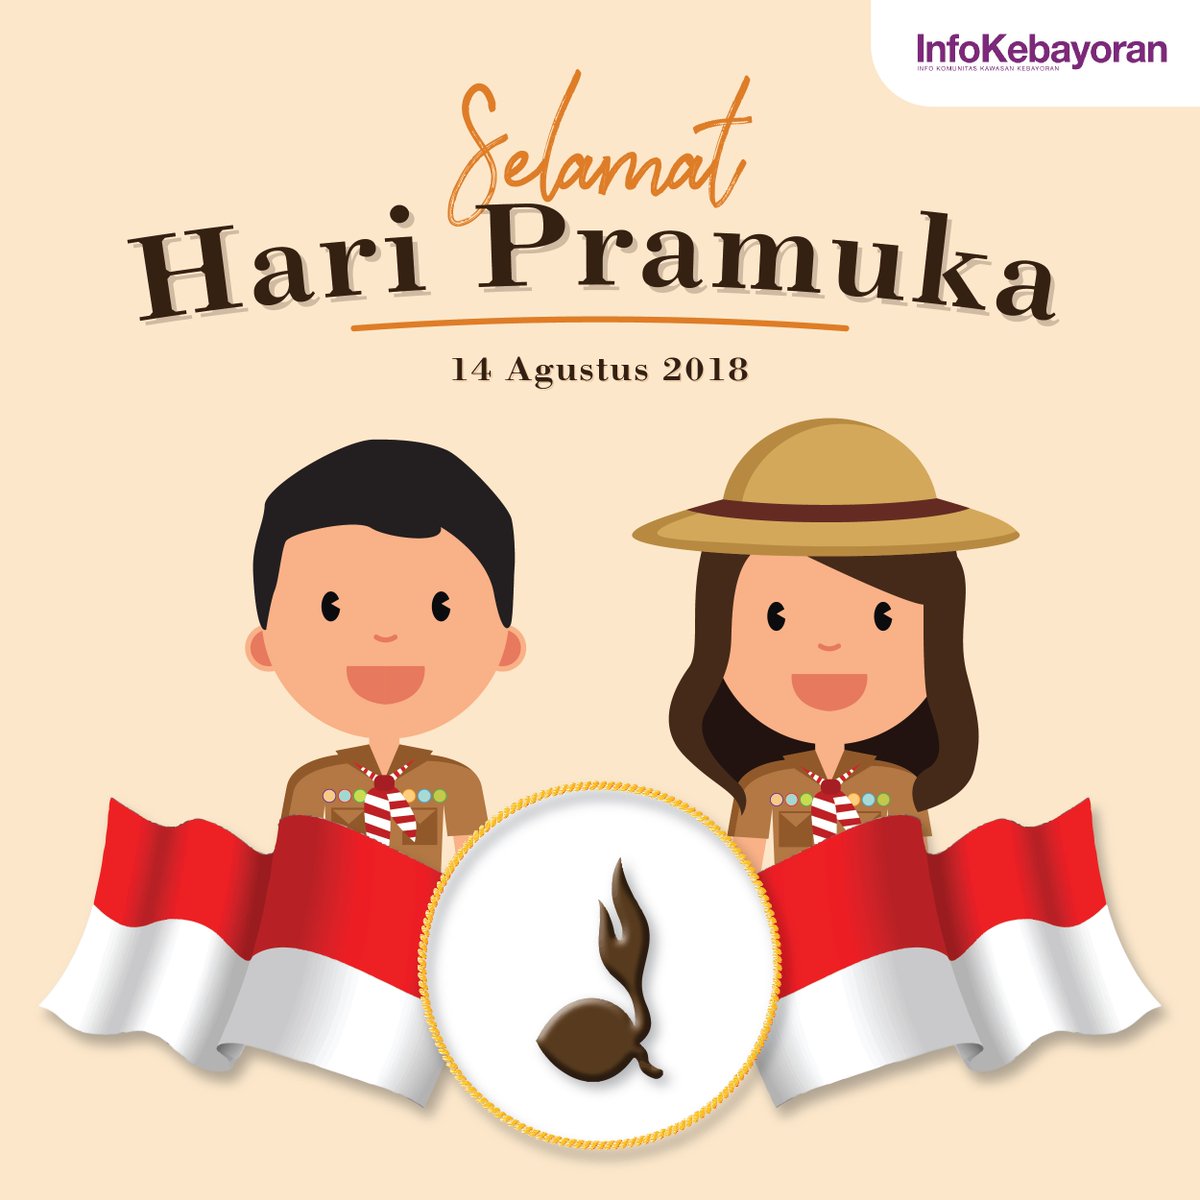 Selamat Hari Pramuka. Semoga dari Gerakan Pramuka lahir pemimpin-pemimpin muda Indonesia masa depan

#infonitas #Infogadinggroup #haripramuka #pramuka #haripramuka2018 #infogading #Infokebayoran #infoserpong